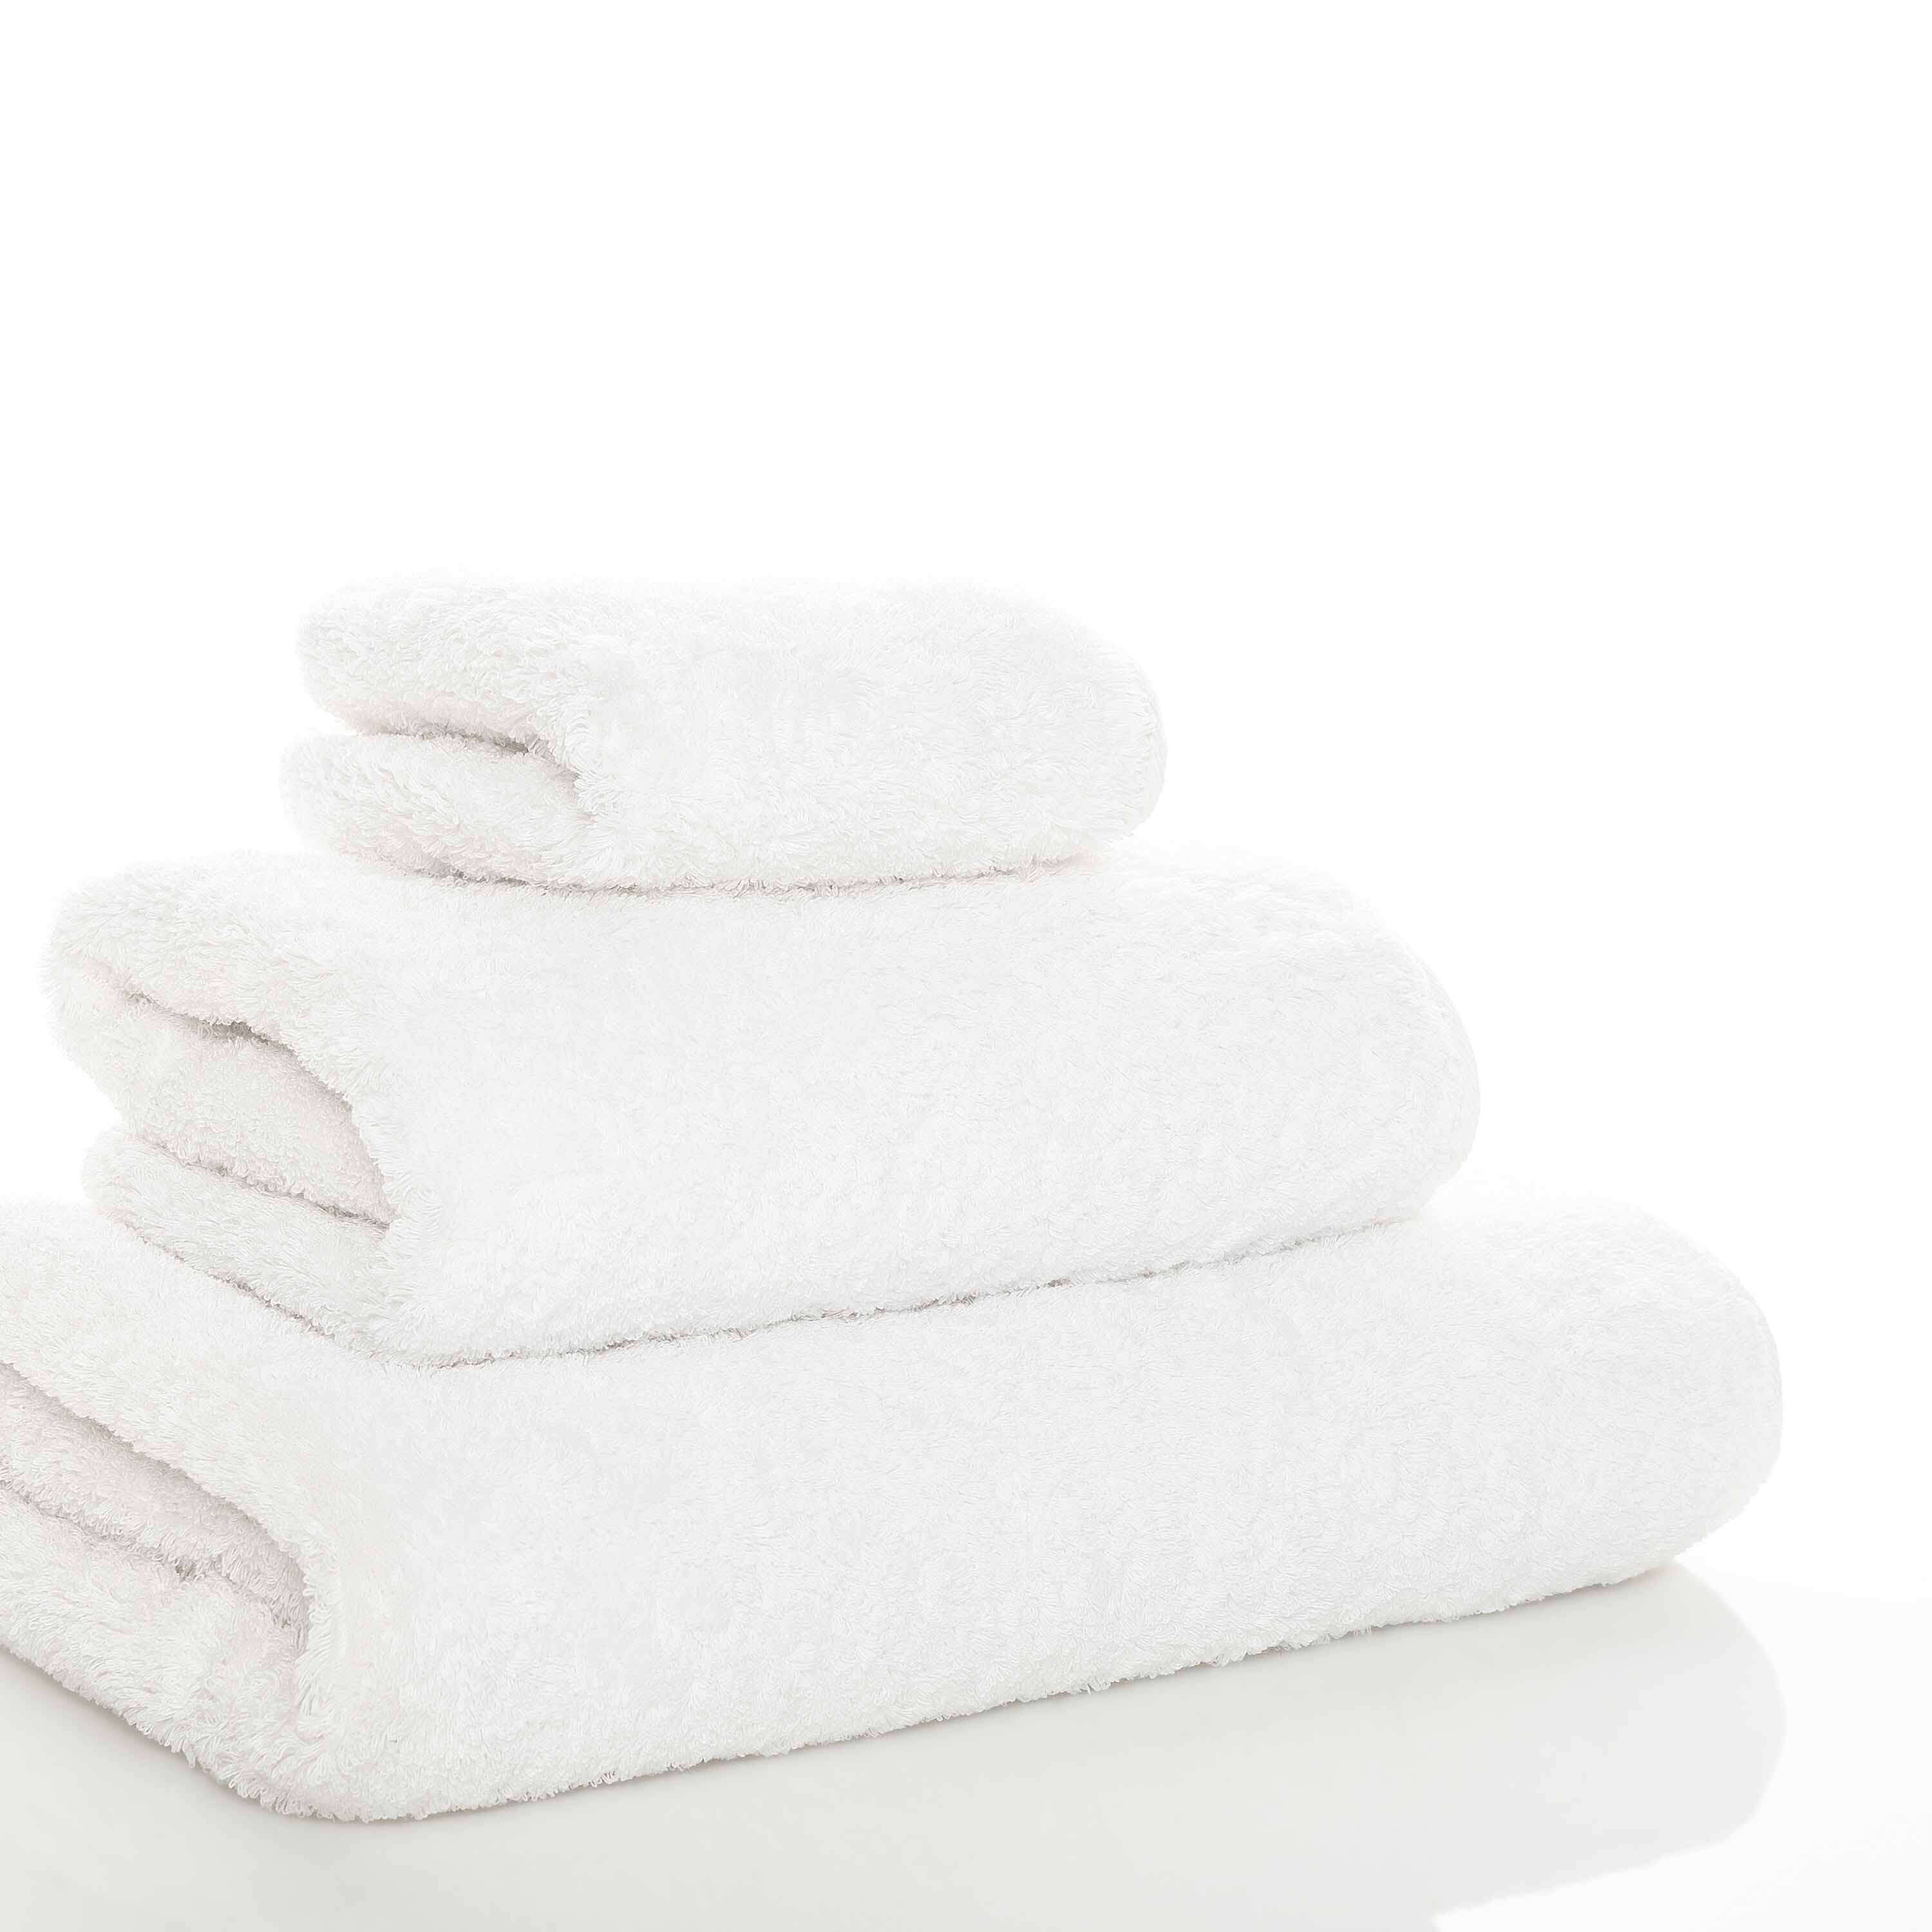 Элитное полотенце Egoist Range White ☞ Размер: 60 x 110 см